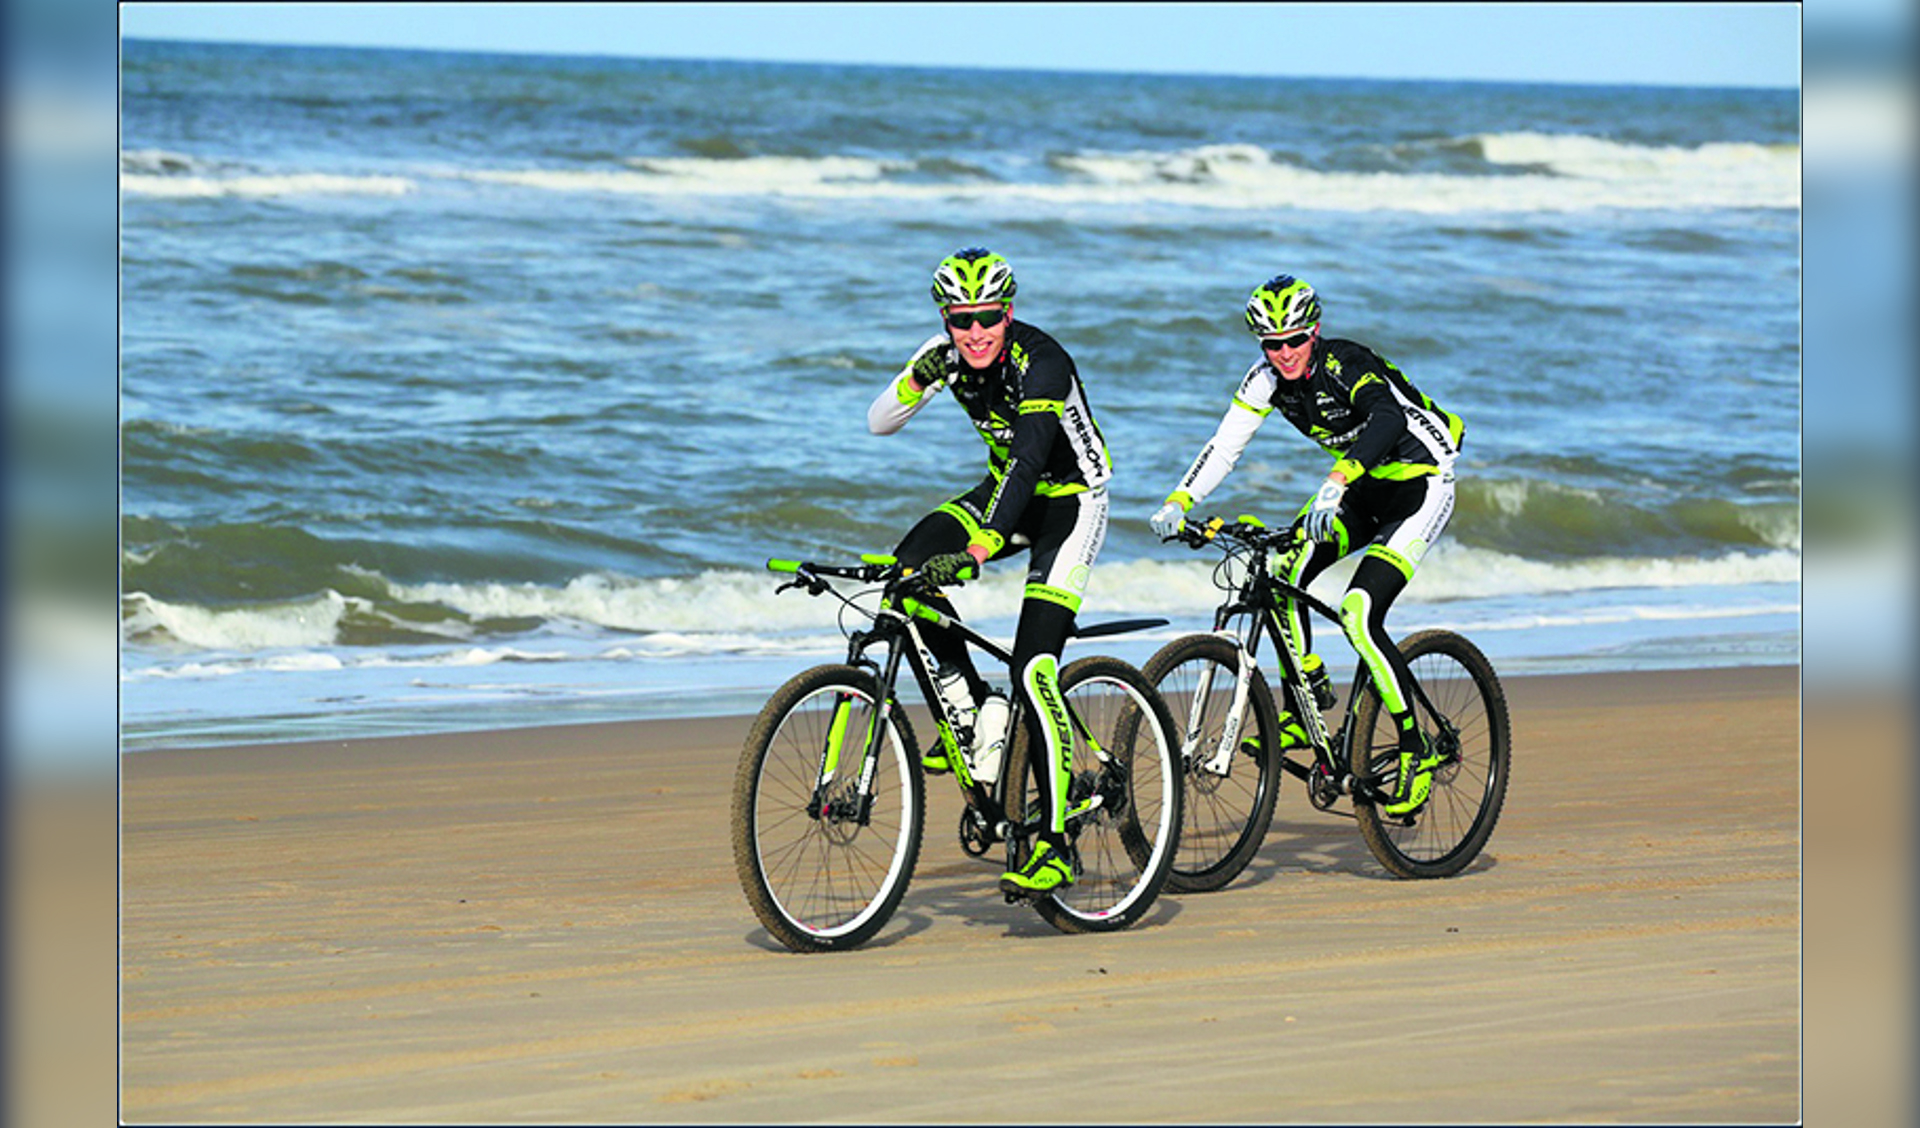 Deelnemers aan de MTB toertocht van Le Champion fietsen zondag 30 december door de polder, over het strand en door het duingebied van Schoorl. (foto: Aangeleverd)